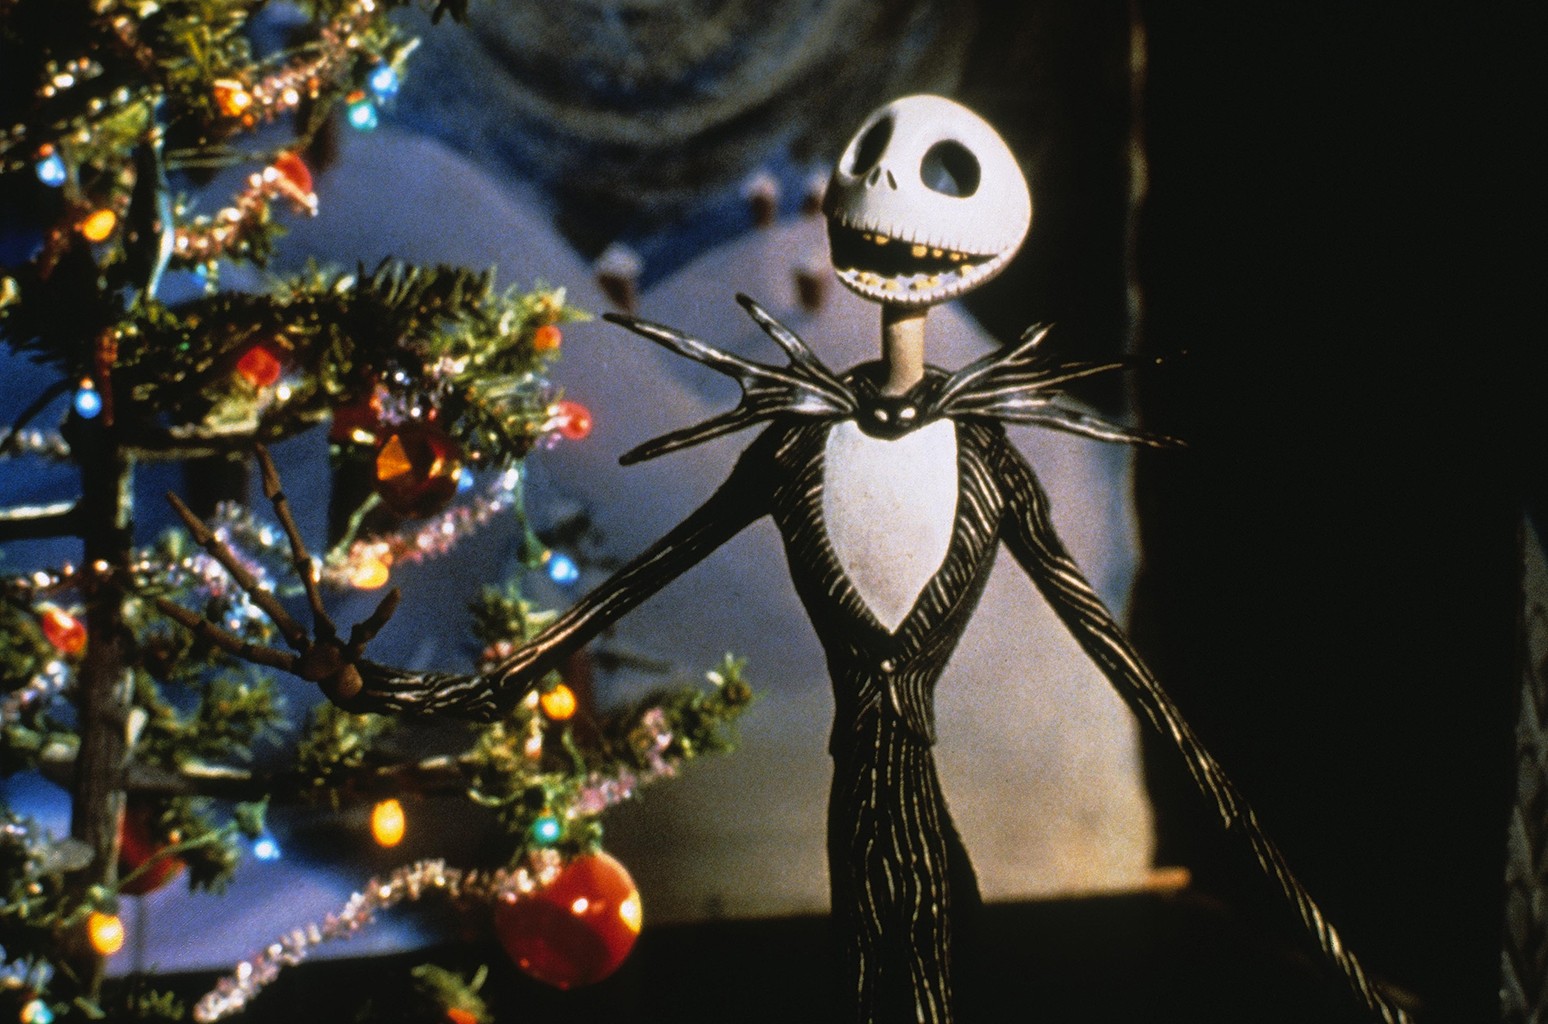 Nếu bạn đang cần một bộ phim hay cho Giáng Sinh thì hãy thử The Nightmare Before Christmas nhé!